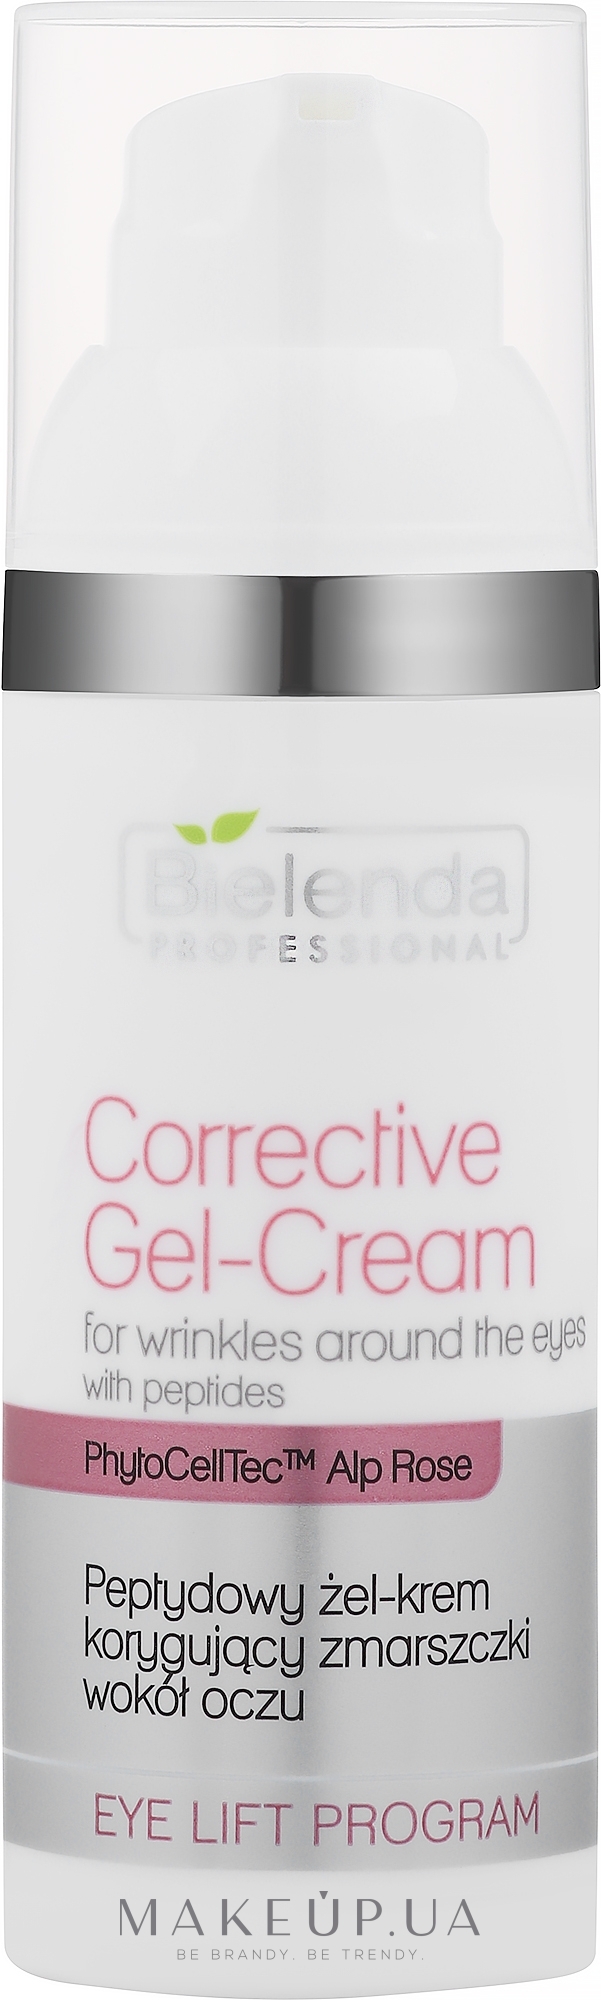 Корректирующий гель-крем для области вокруг глаза с пептидами - Bielenda Professional Eye Lift Program Corrective Gel-Cream — фото 50ml